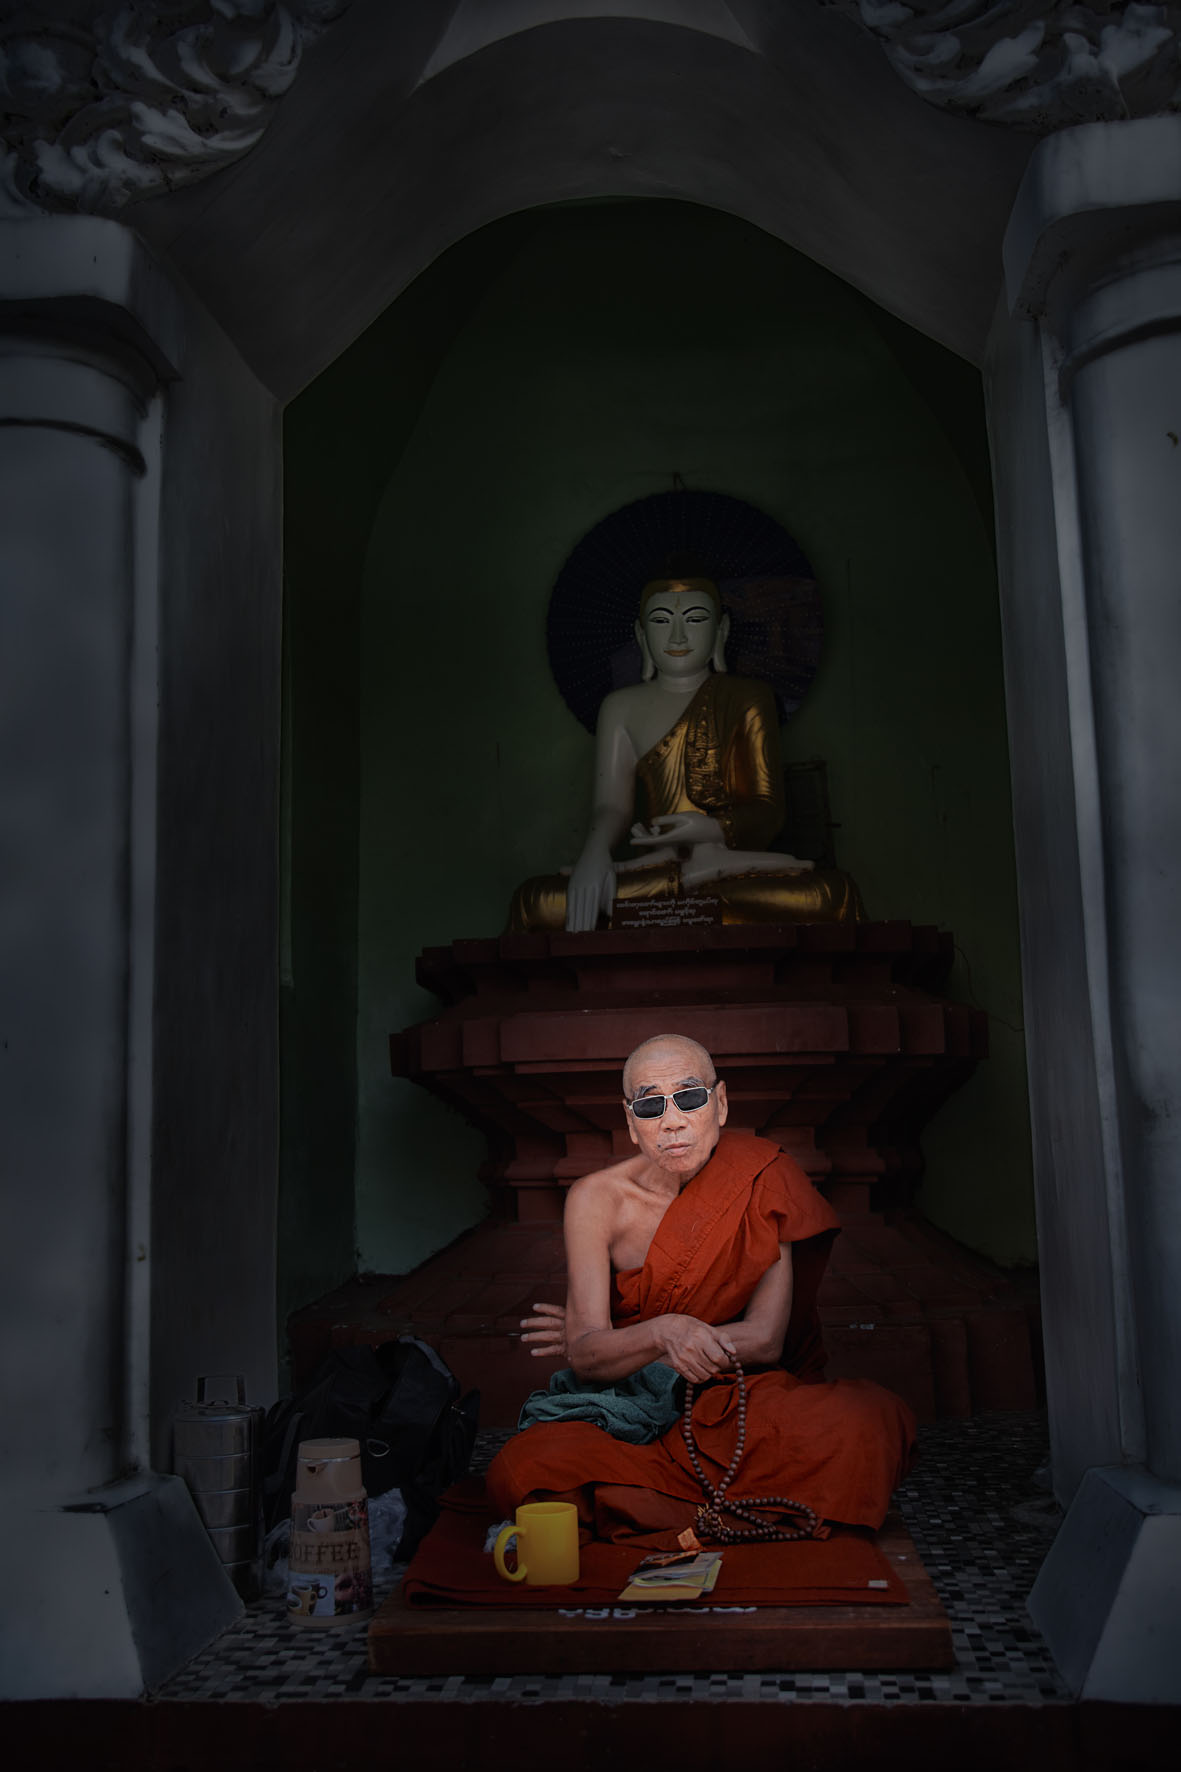 Mirroring the Buddha